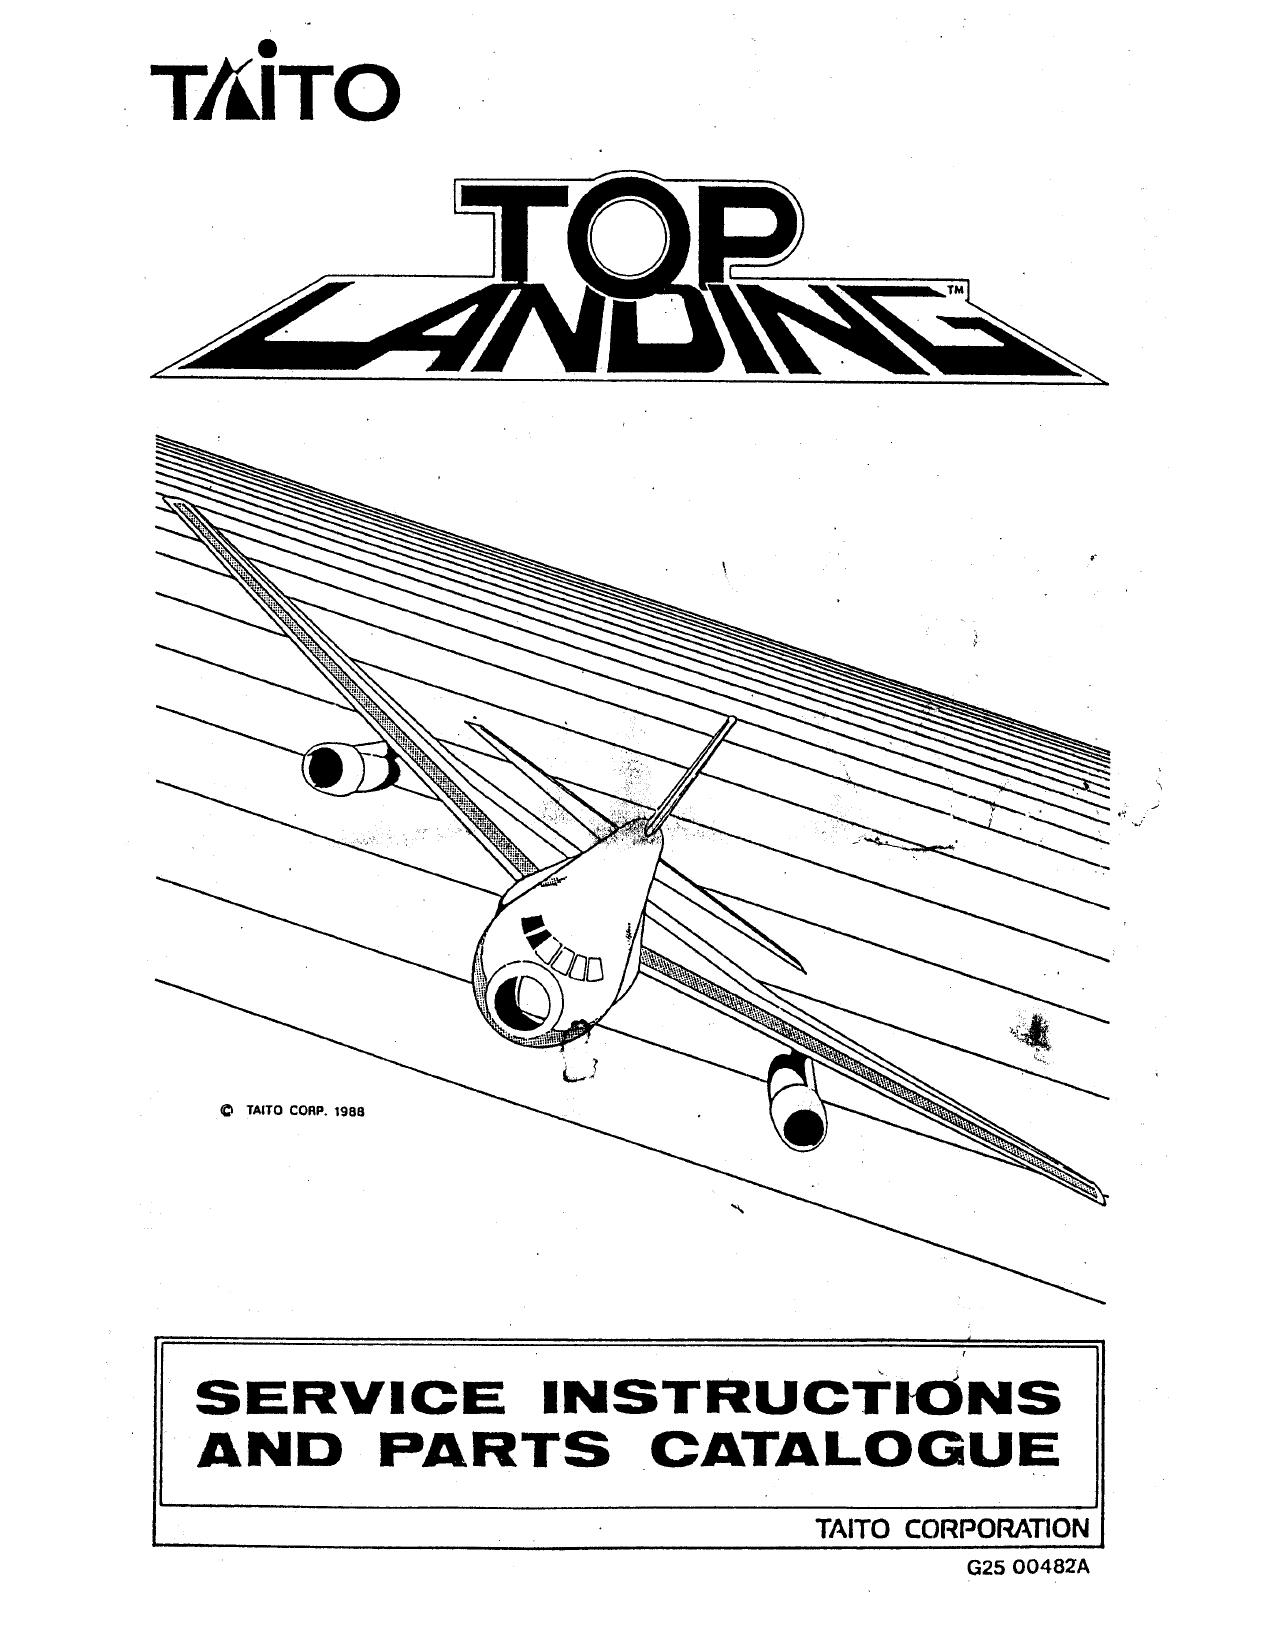 Top Landing